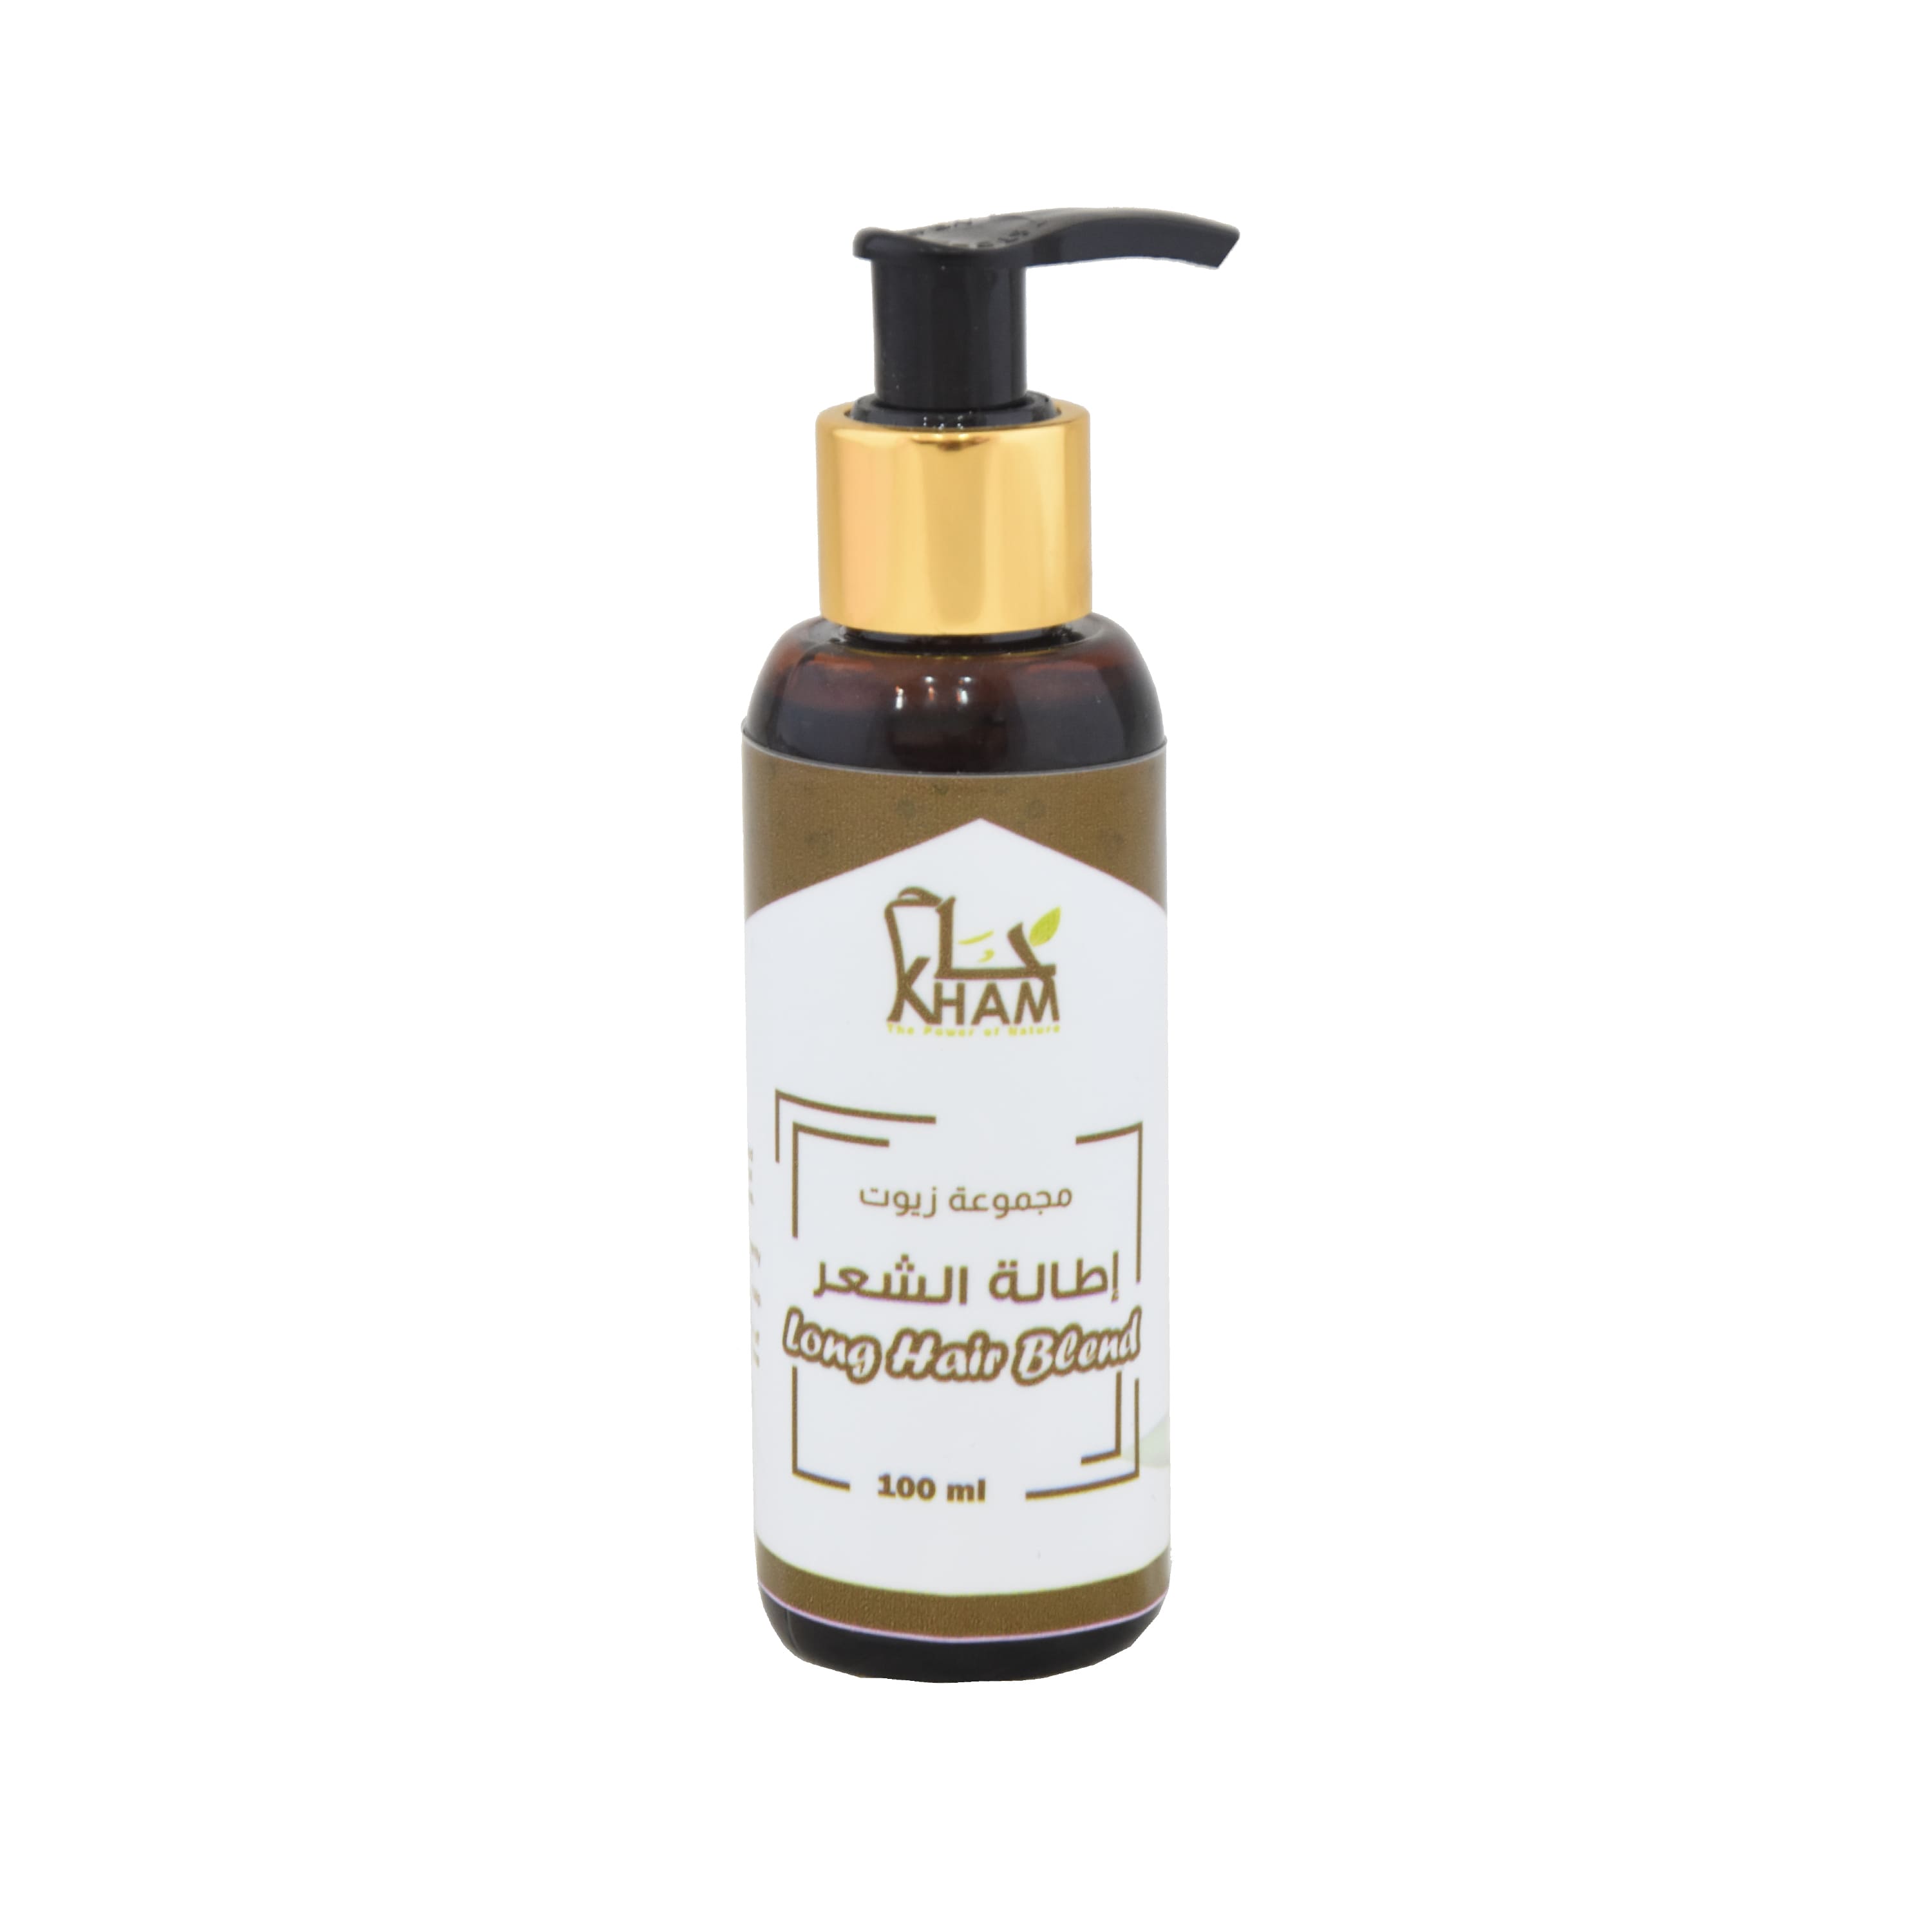 Kham Hair Growth Oil (100 ml) to stimulate hair growth